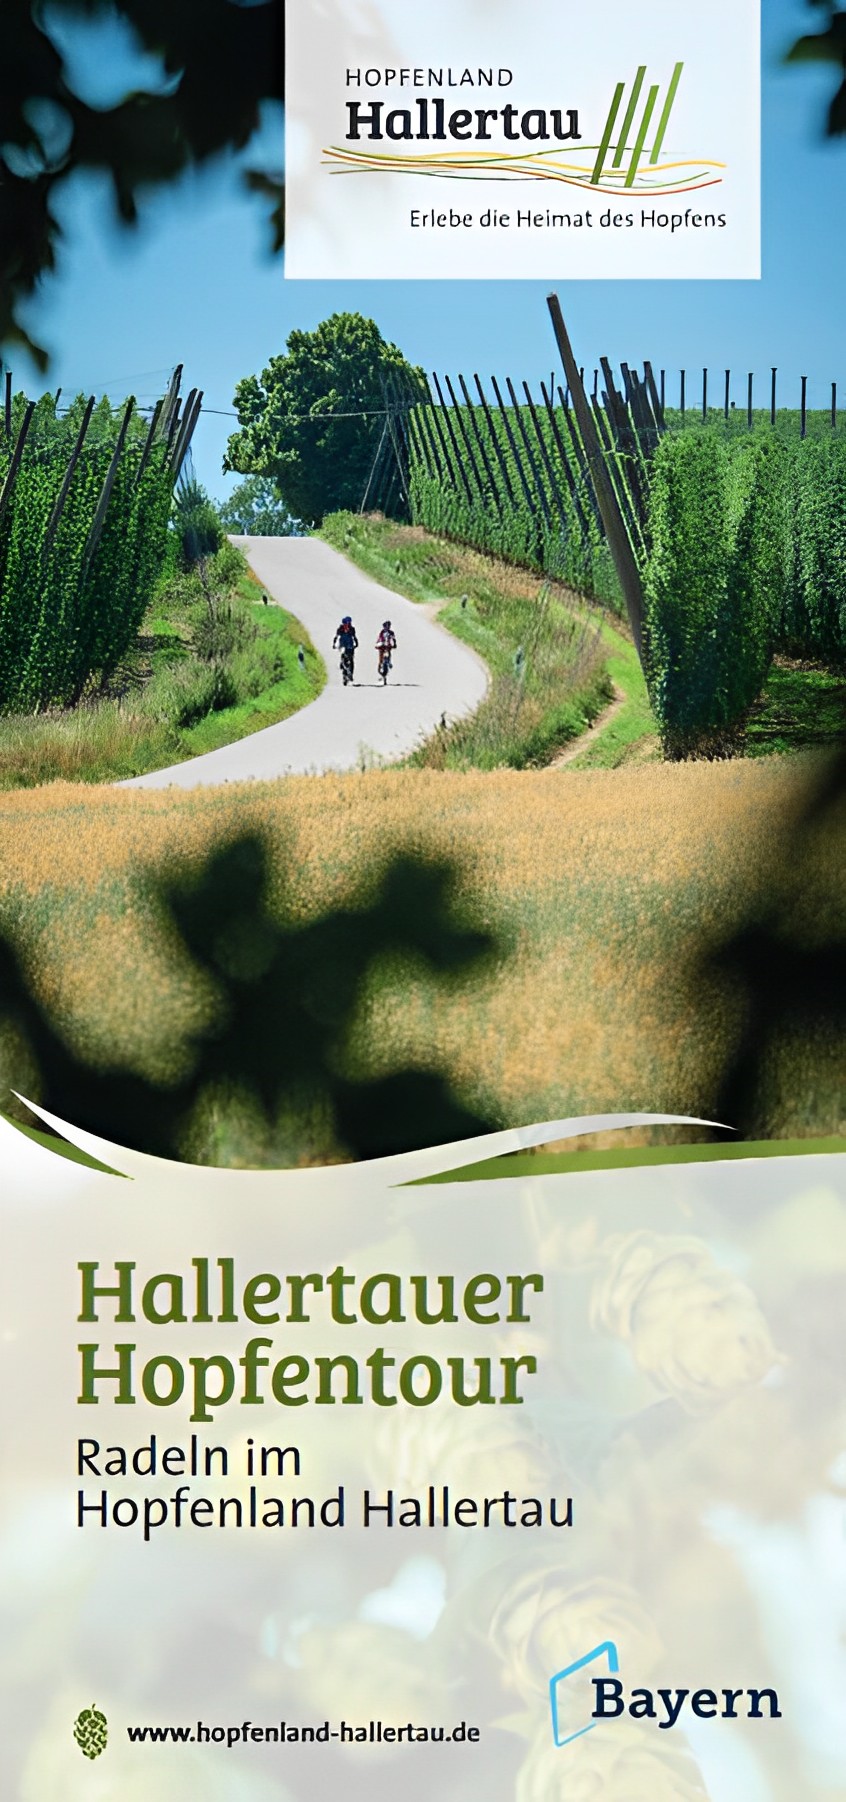 Hallertauer Hopfentour - Die neue Radkarte ist jetzt erhältlich